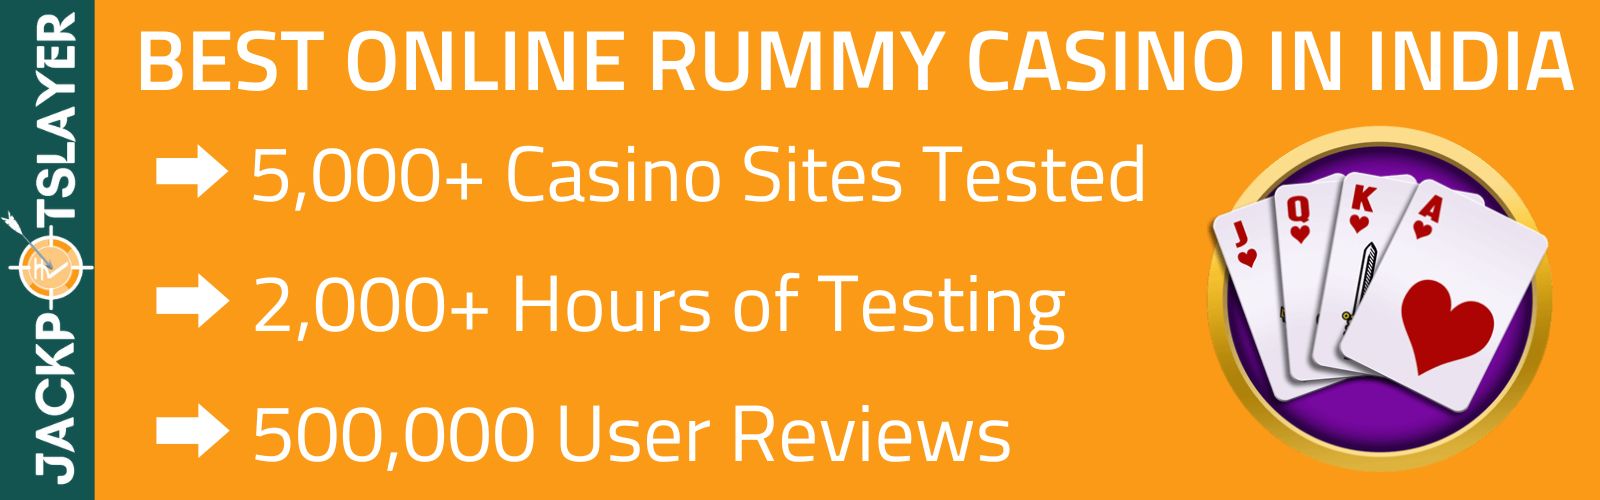 Online Rummy Casino